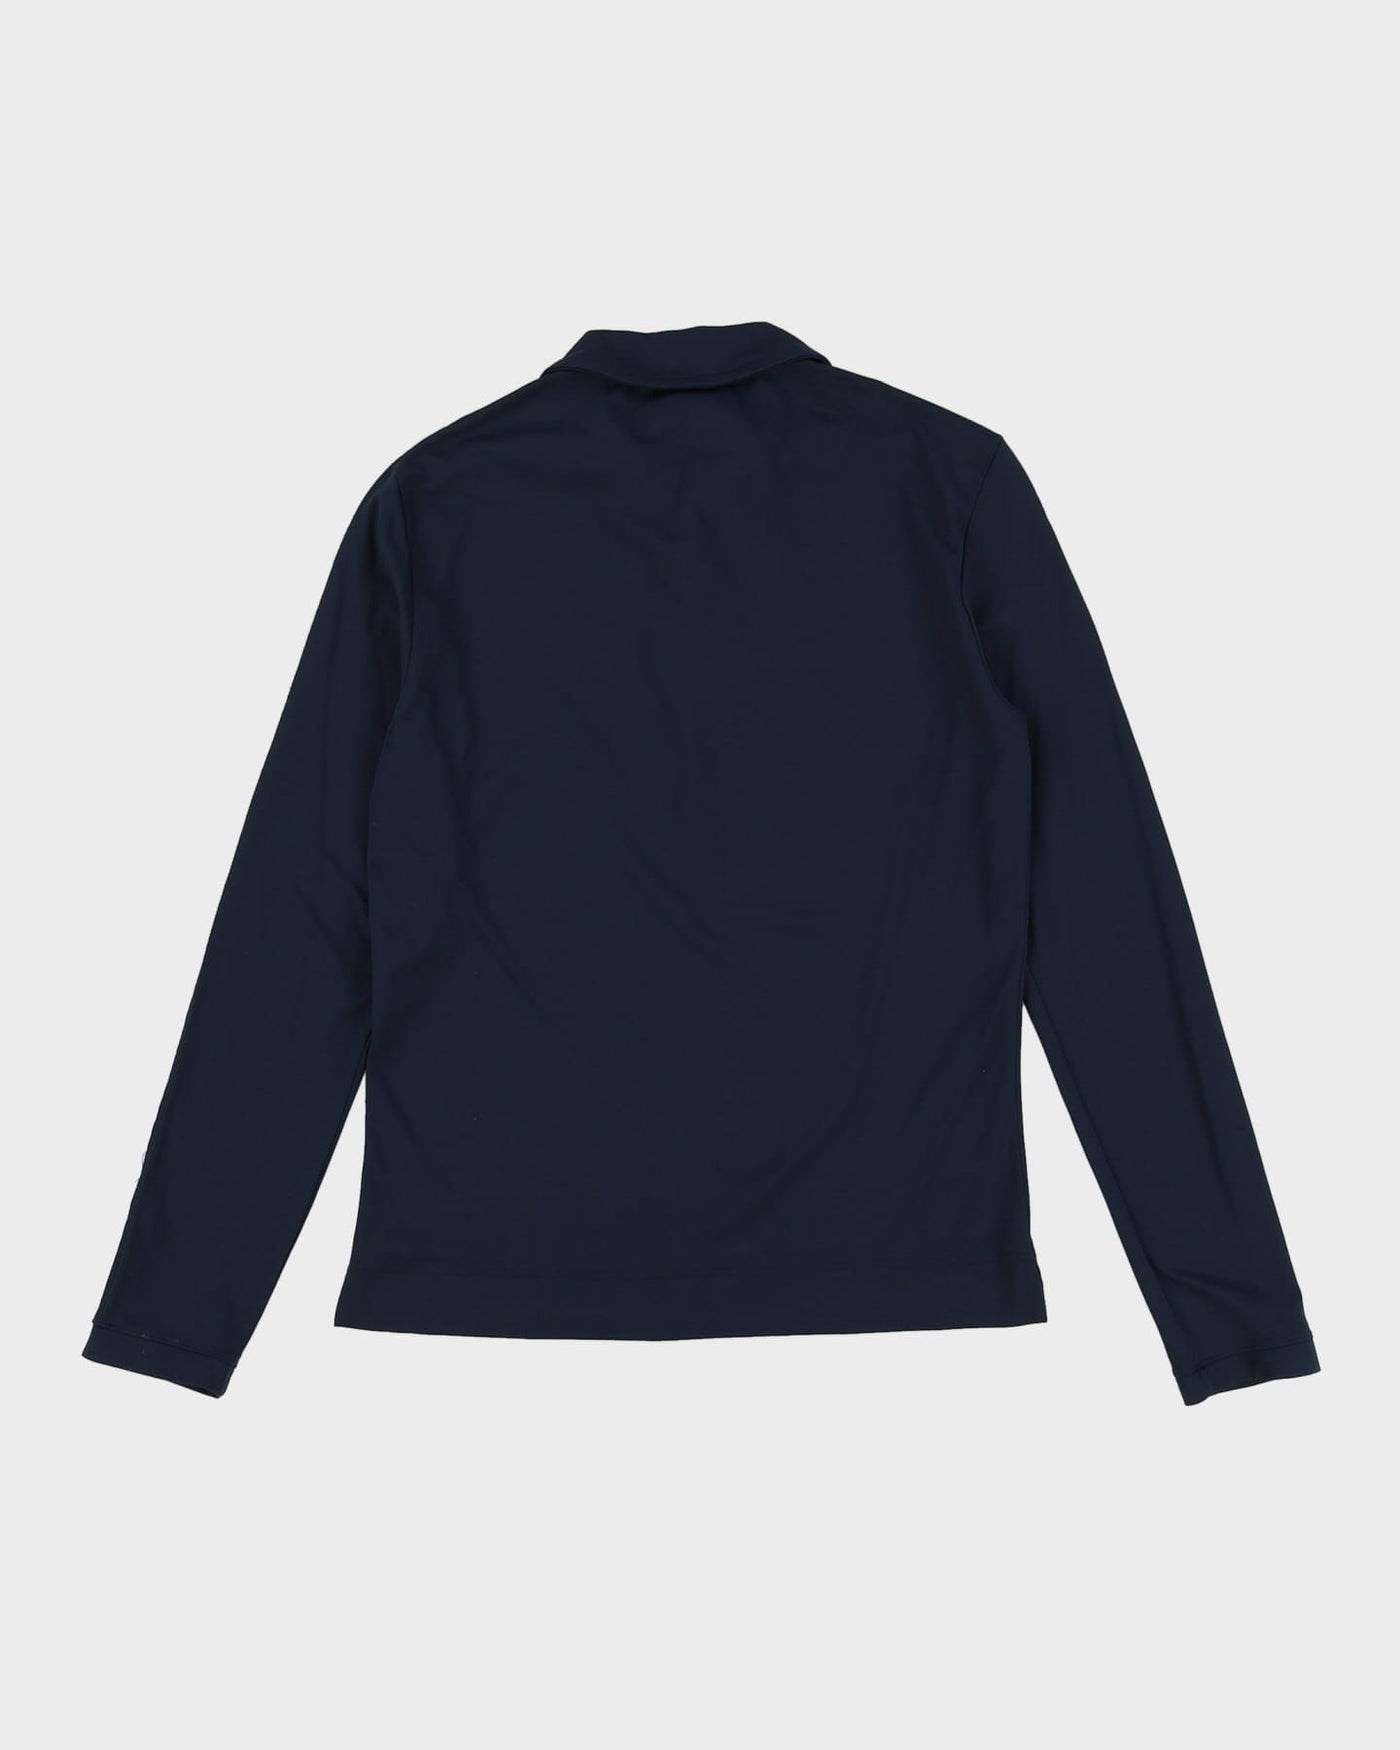 Versace Sport Navy Long Sleeve T-Shirt - S / M